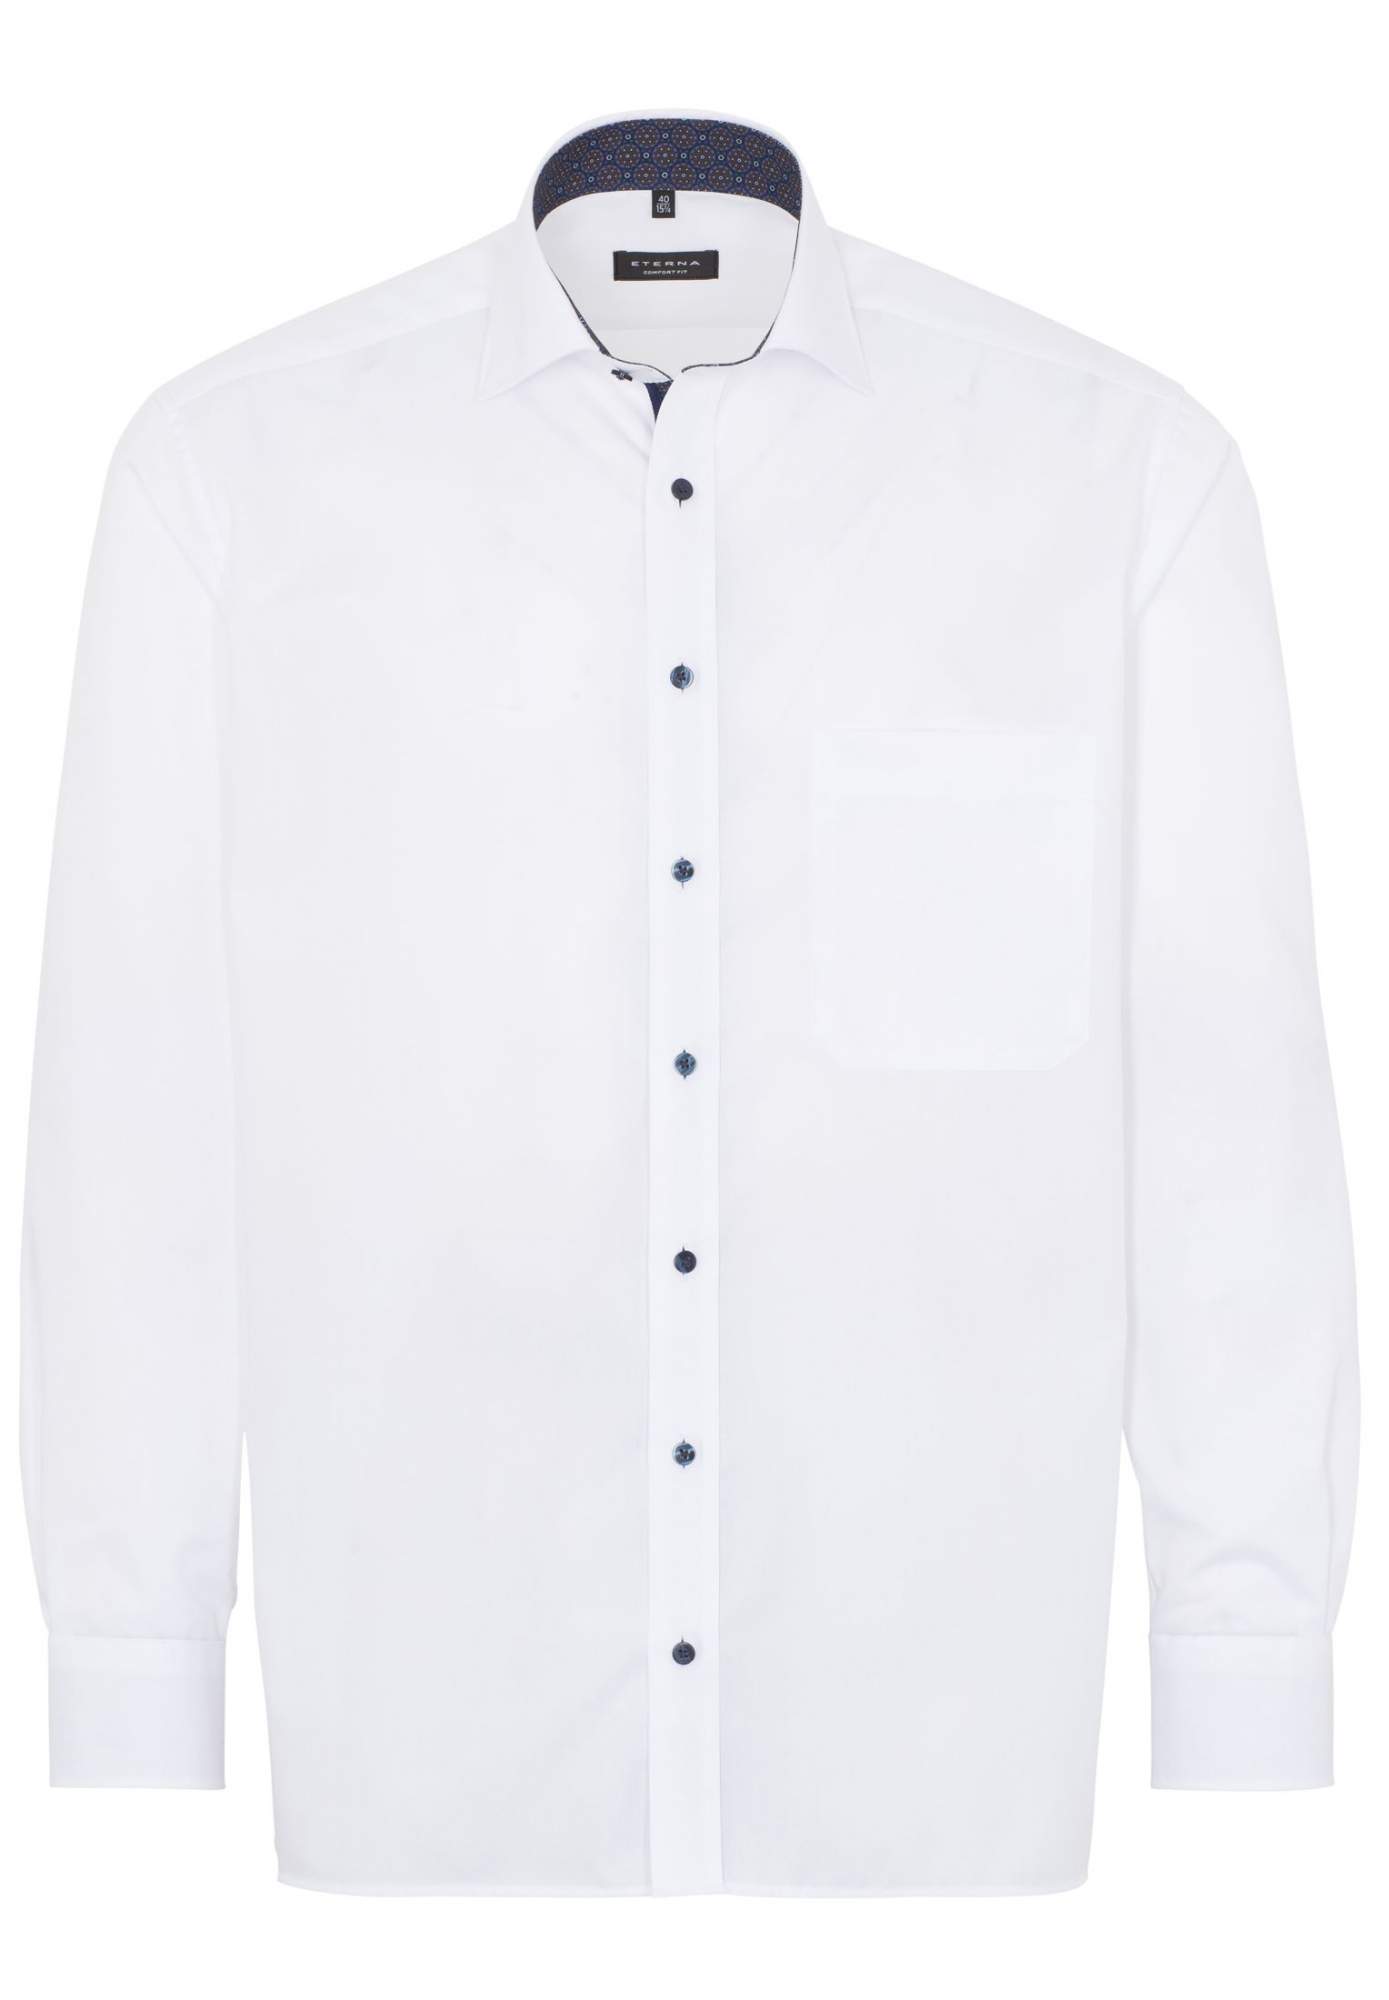 Рубашка мужская ETERNA 1303-00-E37R белая 41 - купить в Москве, цены на Мегамаркет | 600016354409